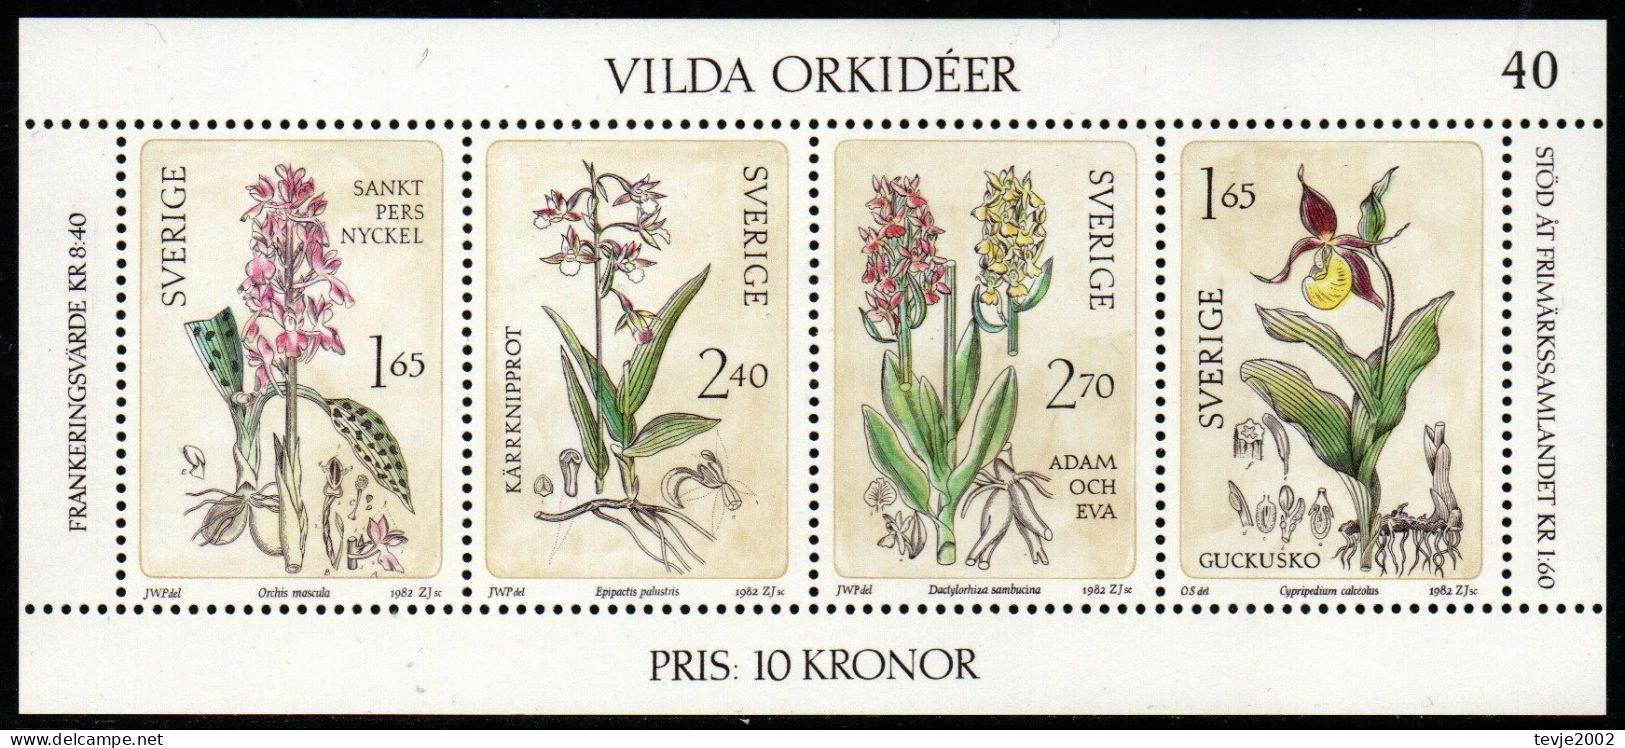 Schweden Sverige 1982 - Mi.Nr. Block 10 - Postfrisch MNH - Blumen Flowers Orchideen Orchids - Orchideen